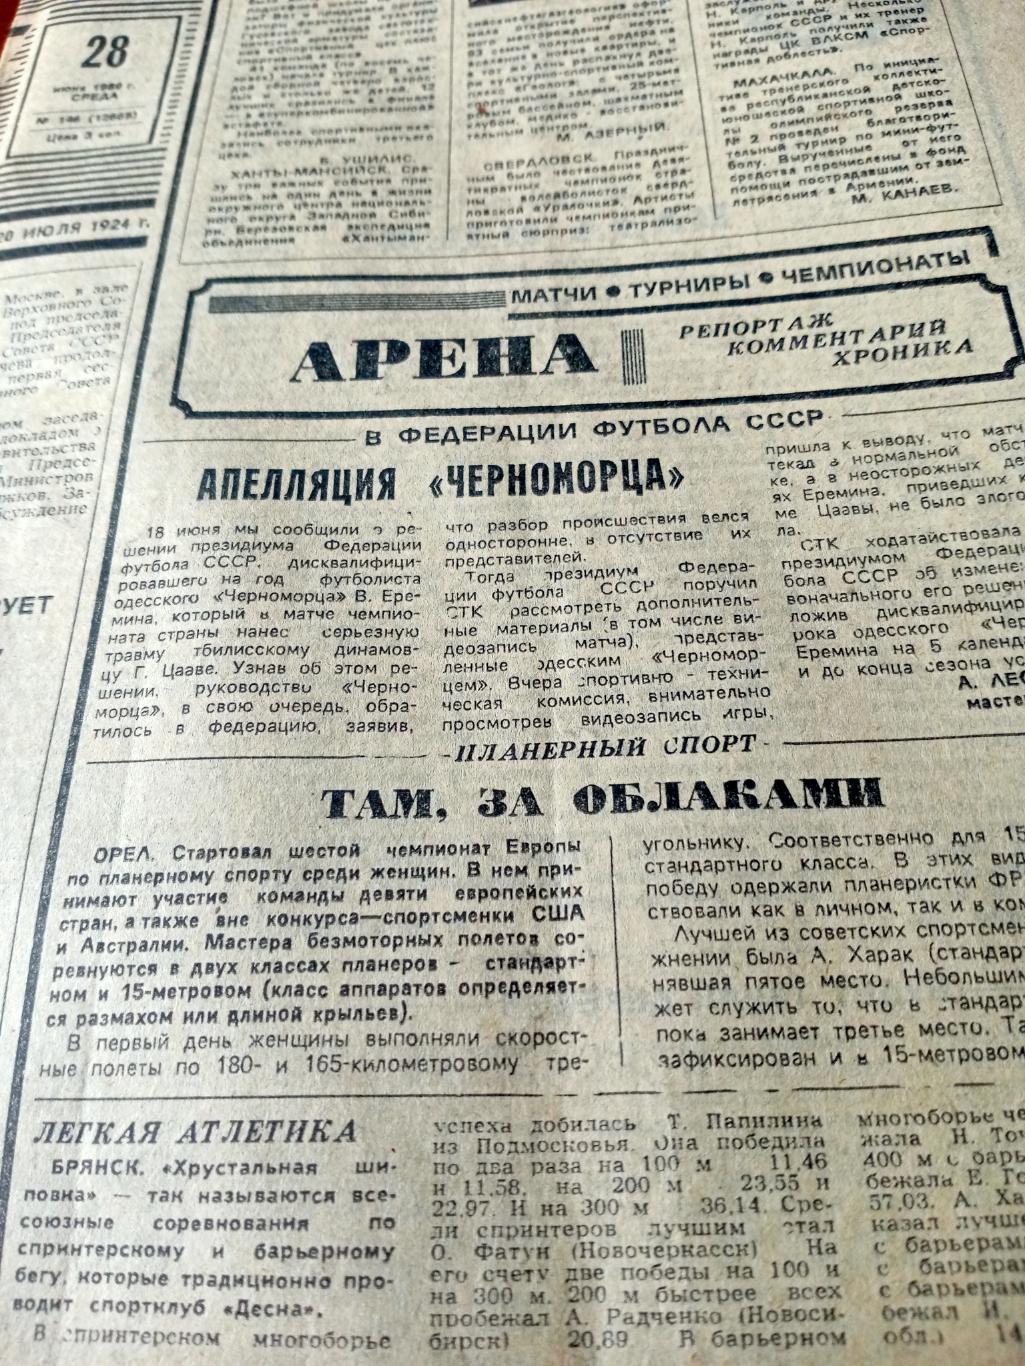 Миражи и мифы. Советский спорт. 1989 год. 28 июня